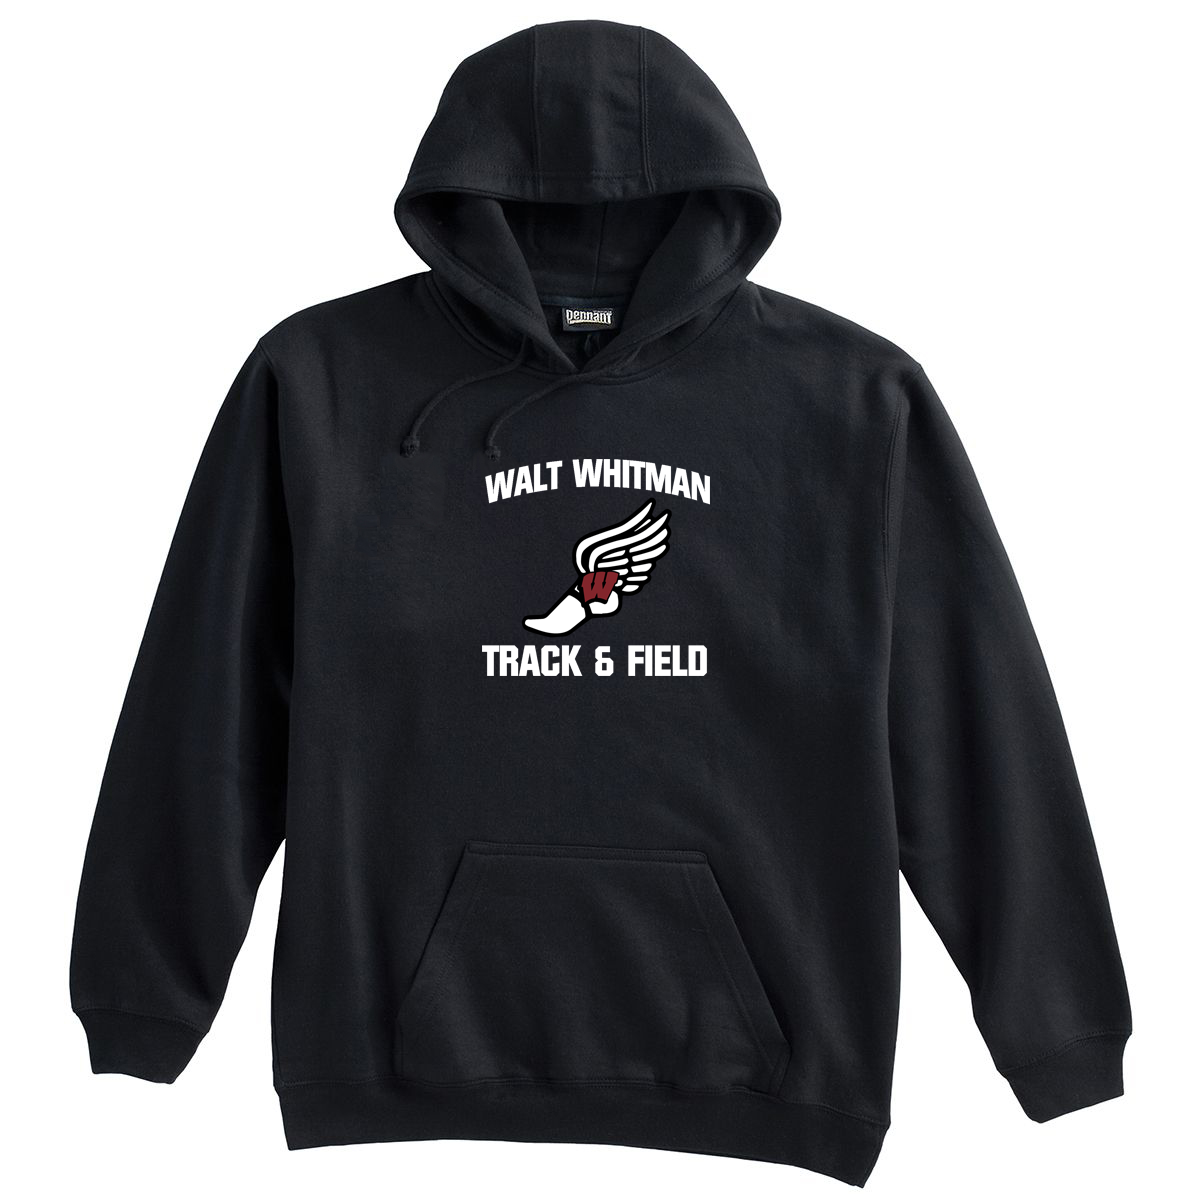 Whitman Track & Field Sweatshirt